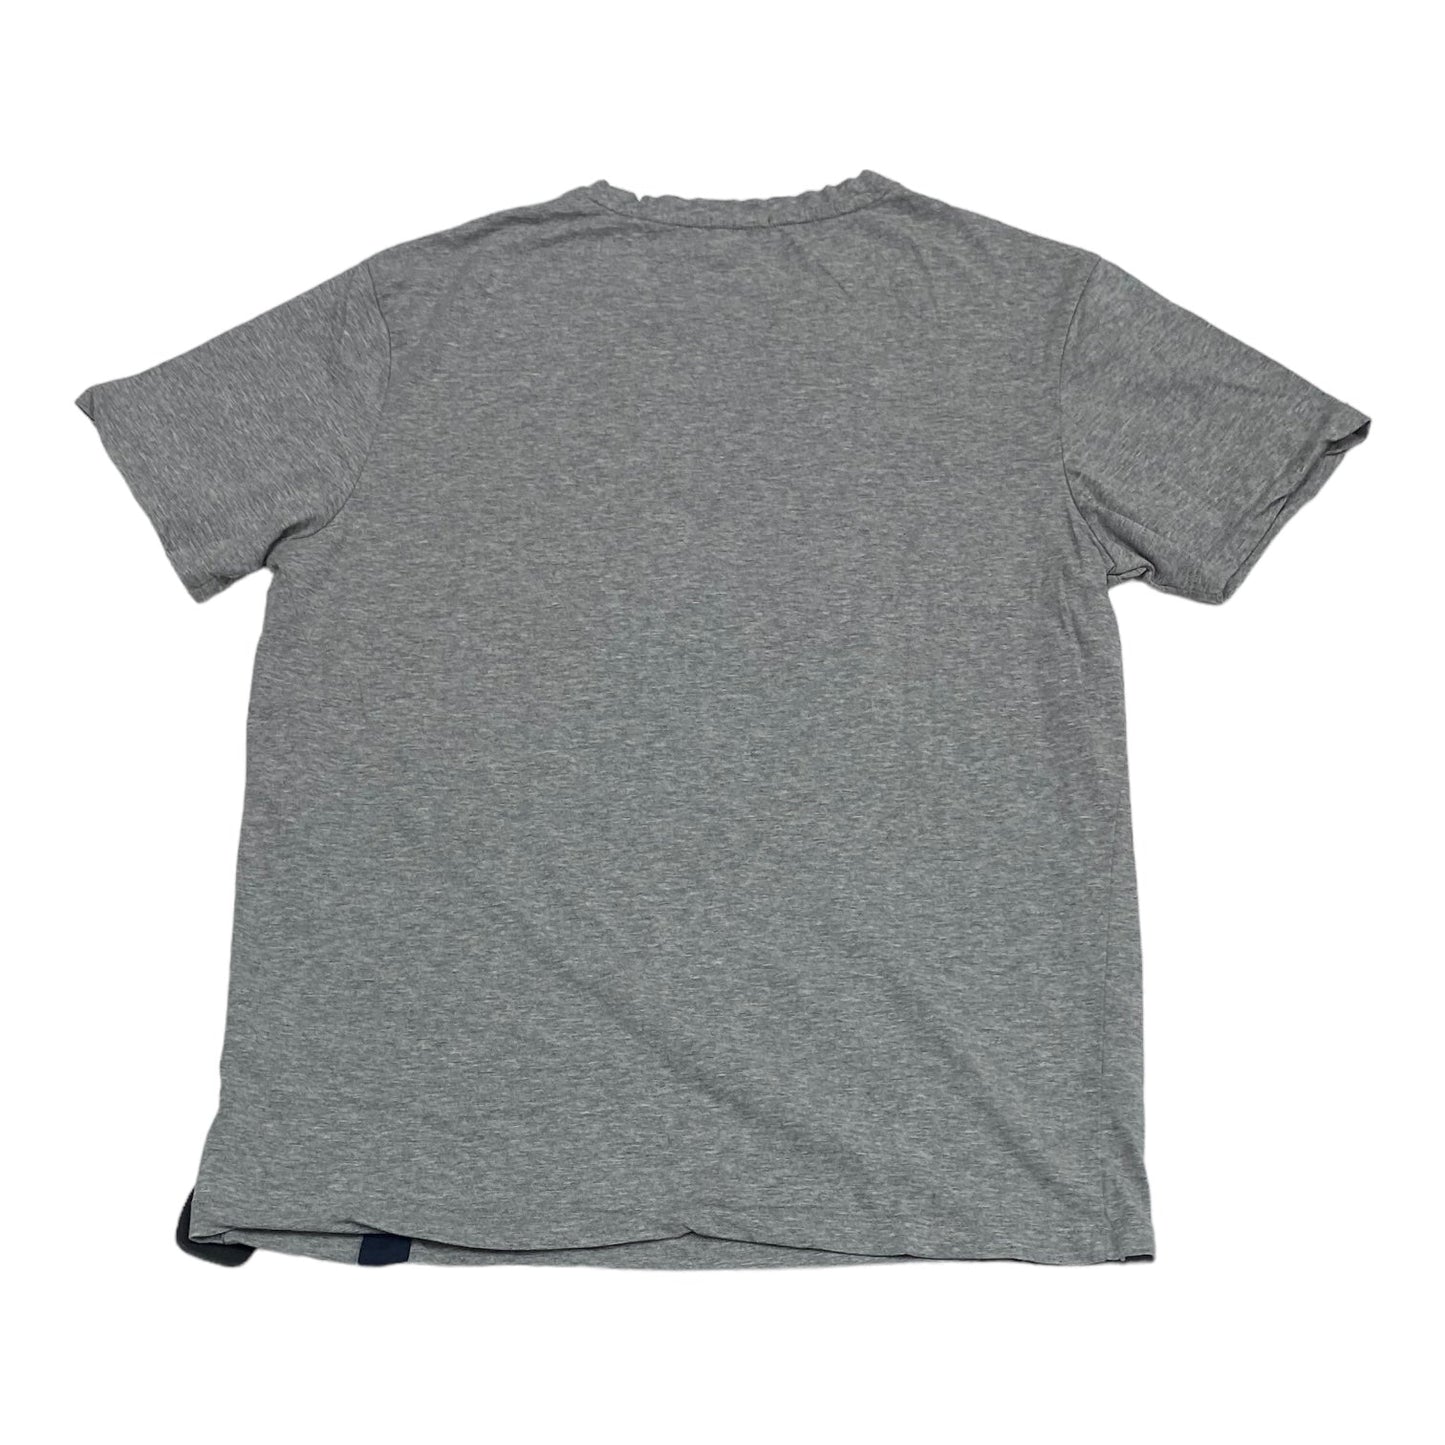 Grey Top Short Sleeve Cmc, Size Xxl